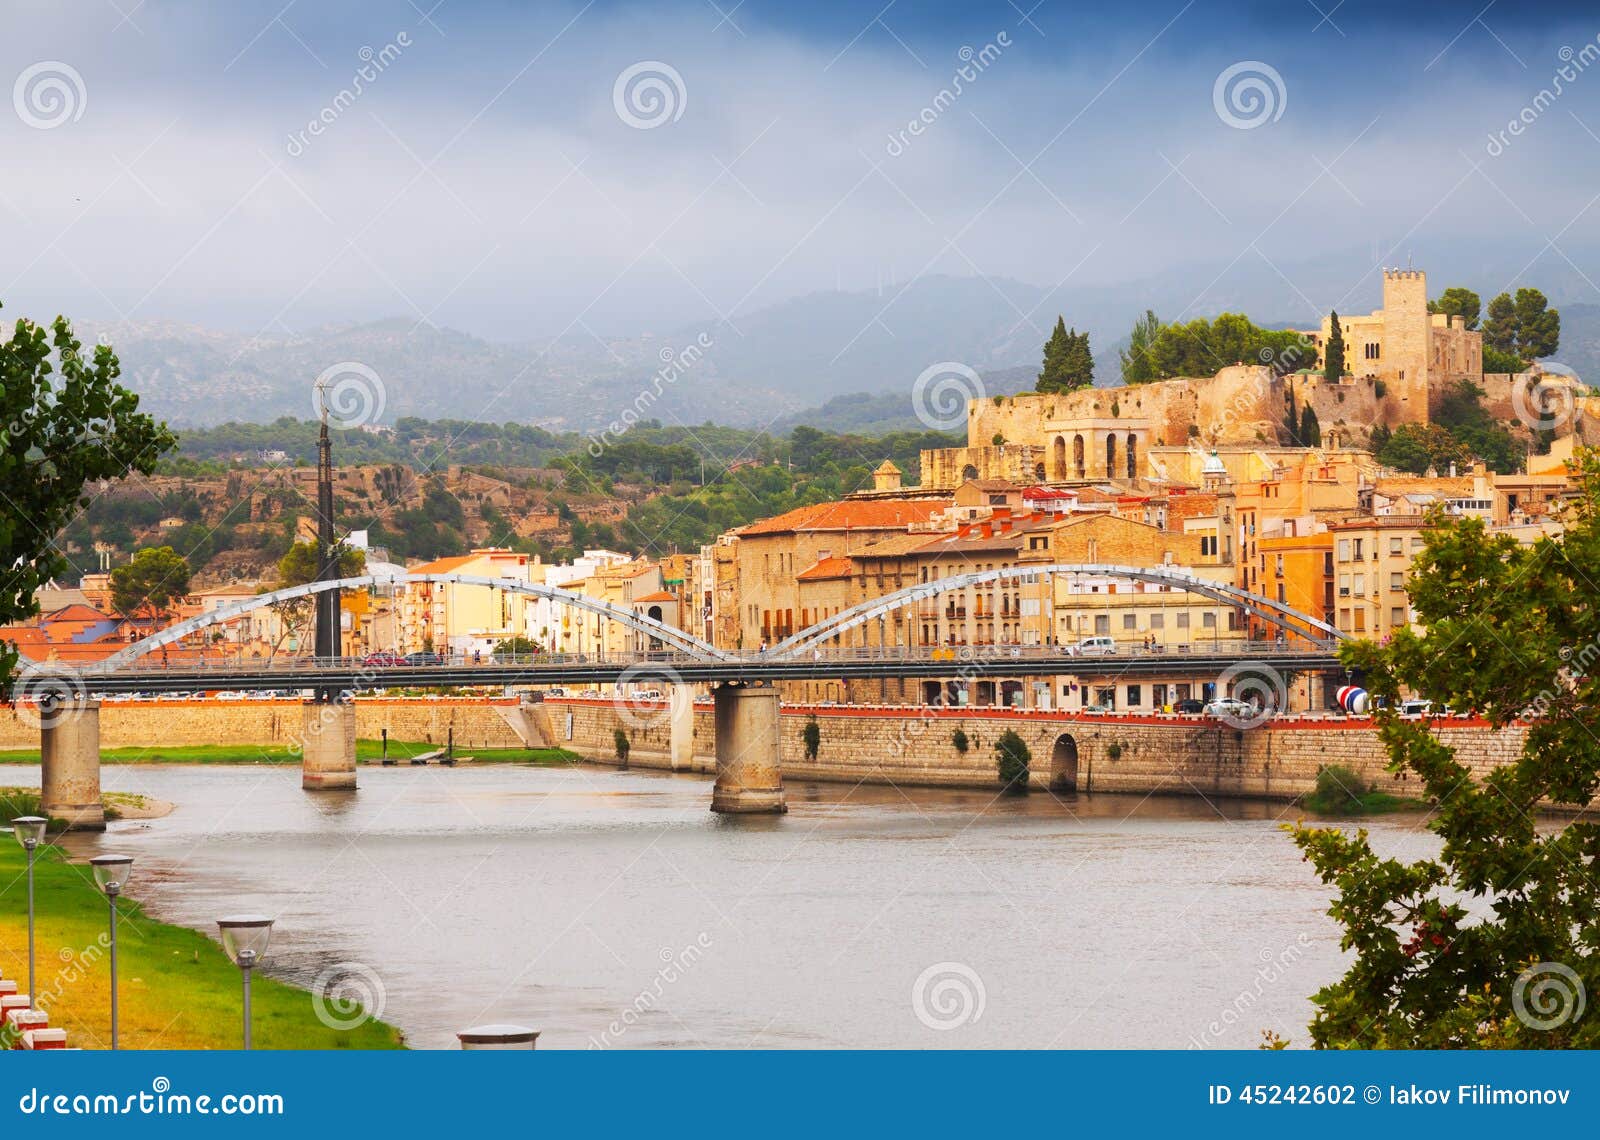 ebro river and suda castle in tortosa